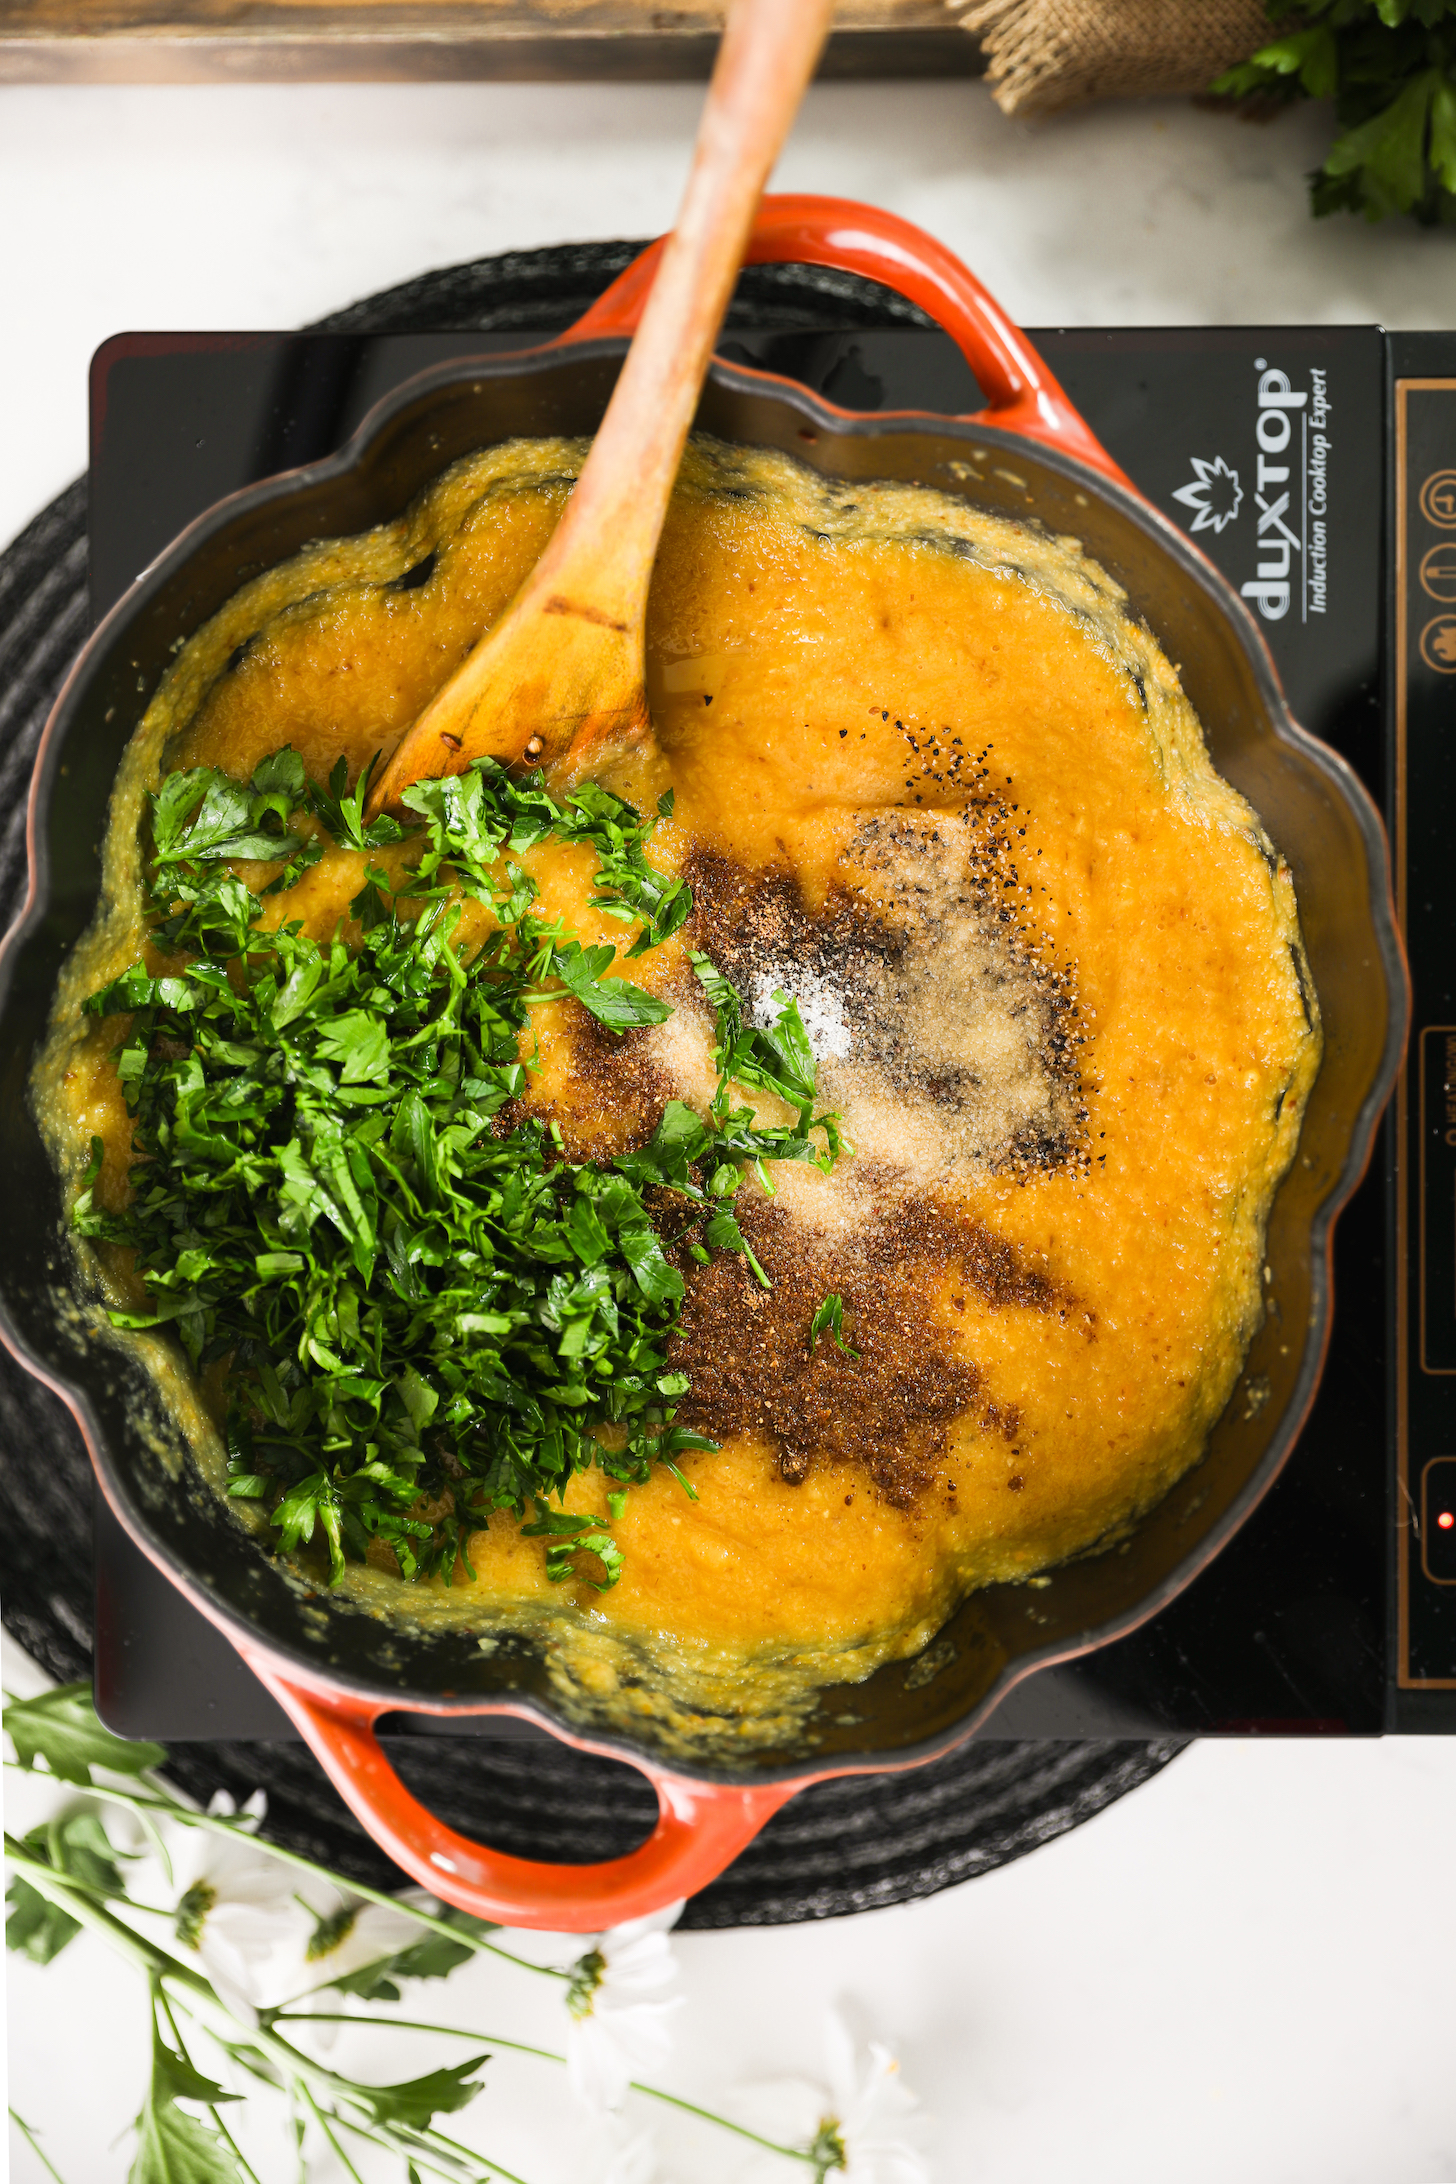 تصویر بالای یک دیگ آشپزی با سوپ خامه ای که روی آن جعفری خرد شده، گارام ماسالا و نمک است.